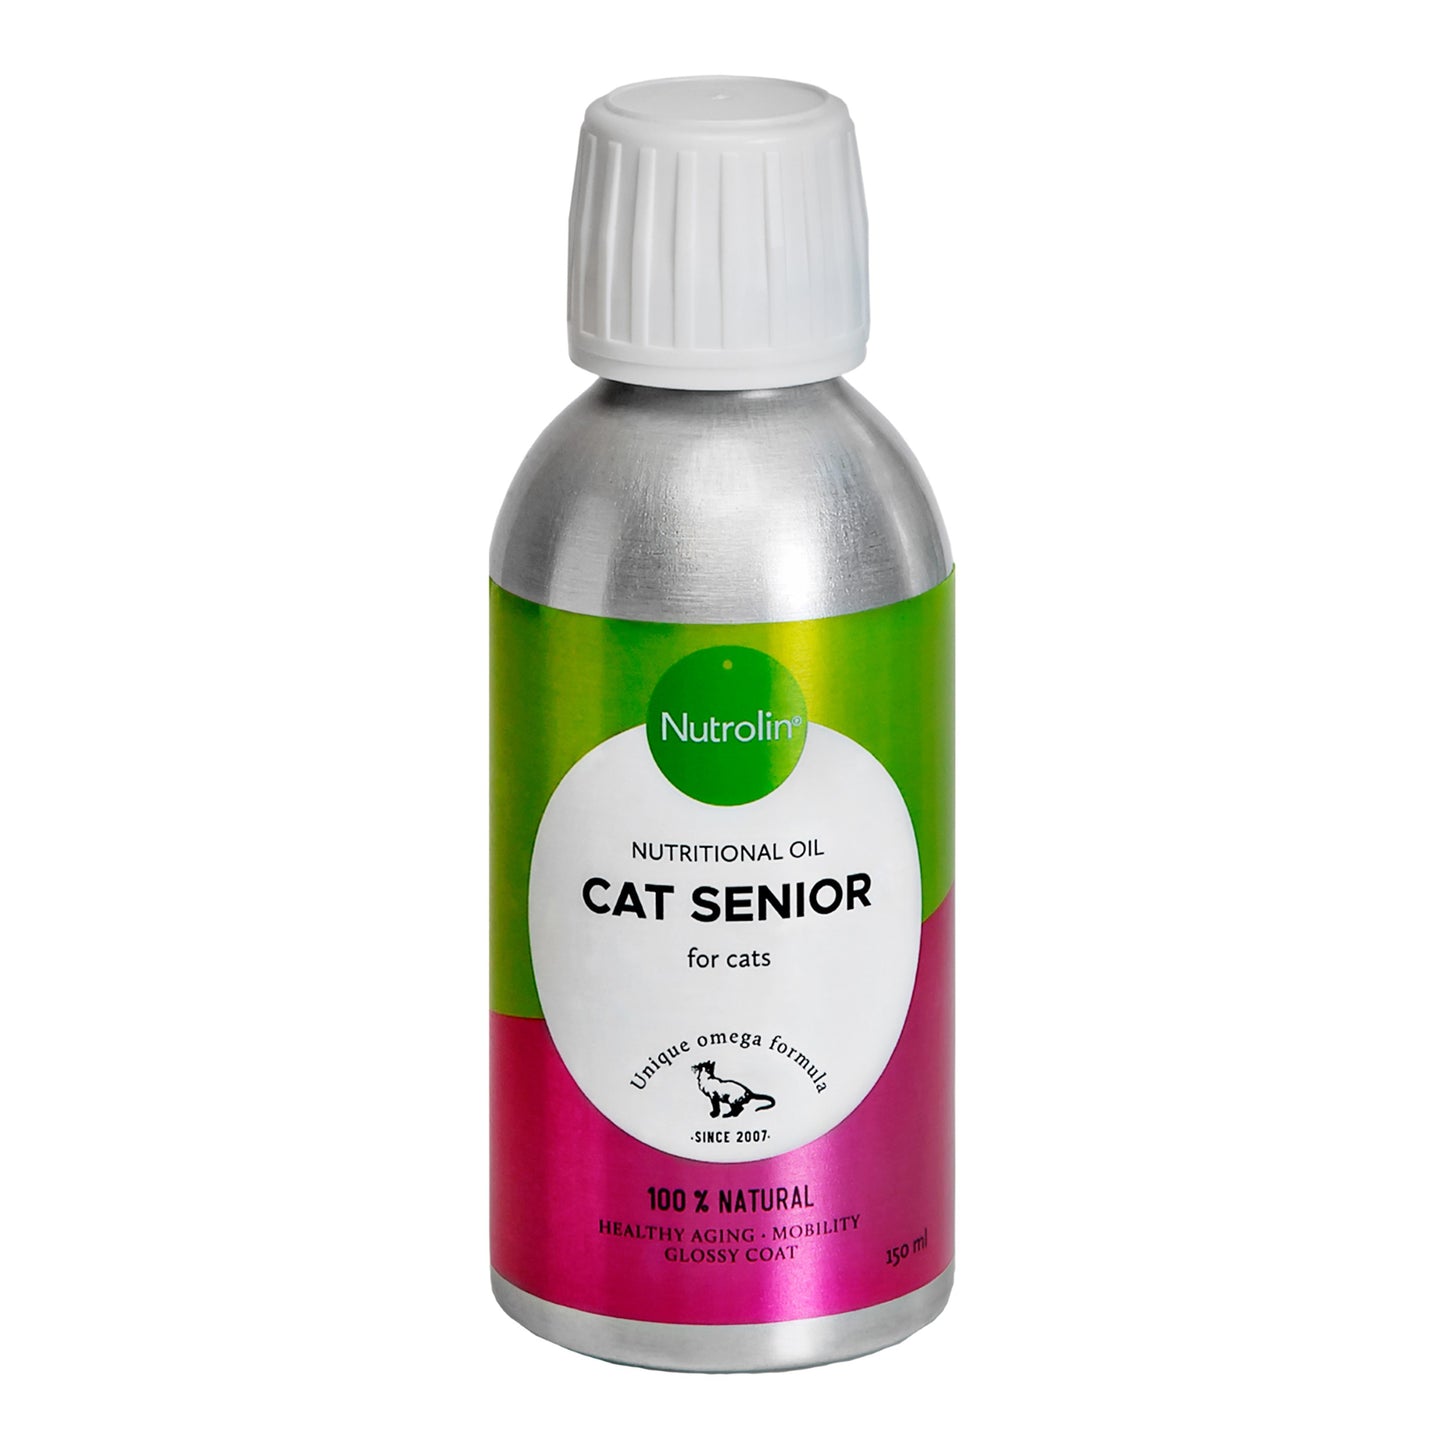 Nutrolin Cat Senior